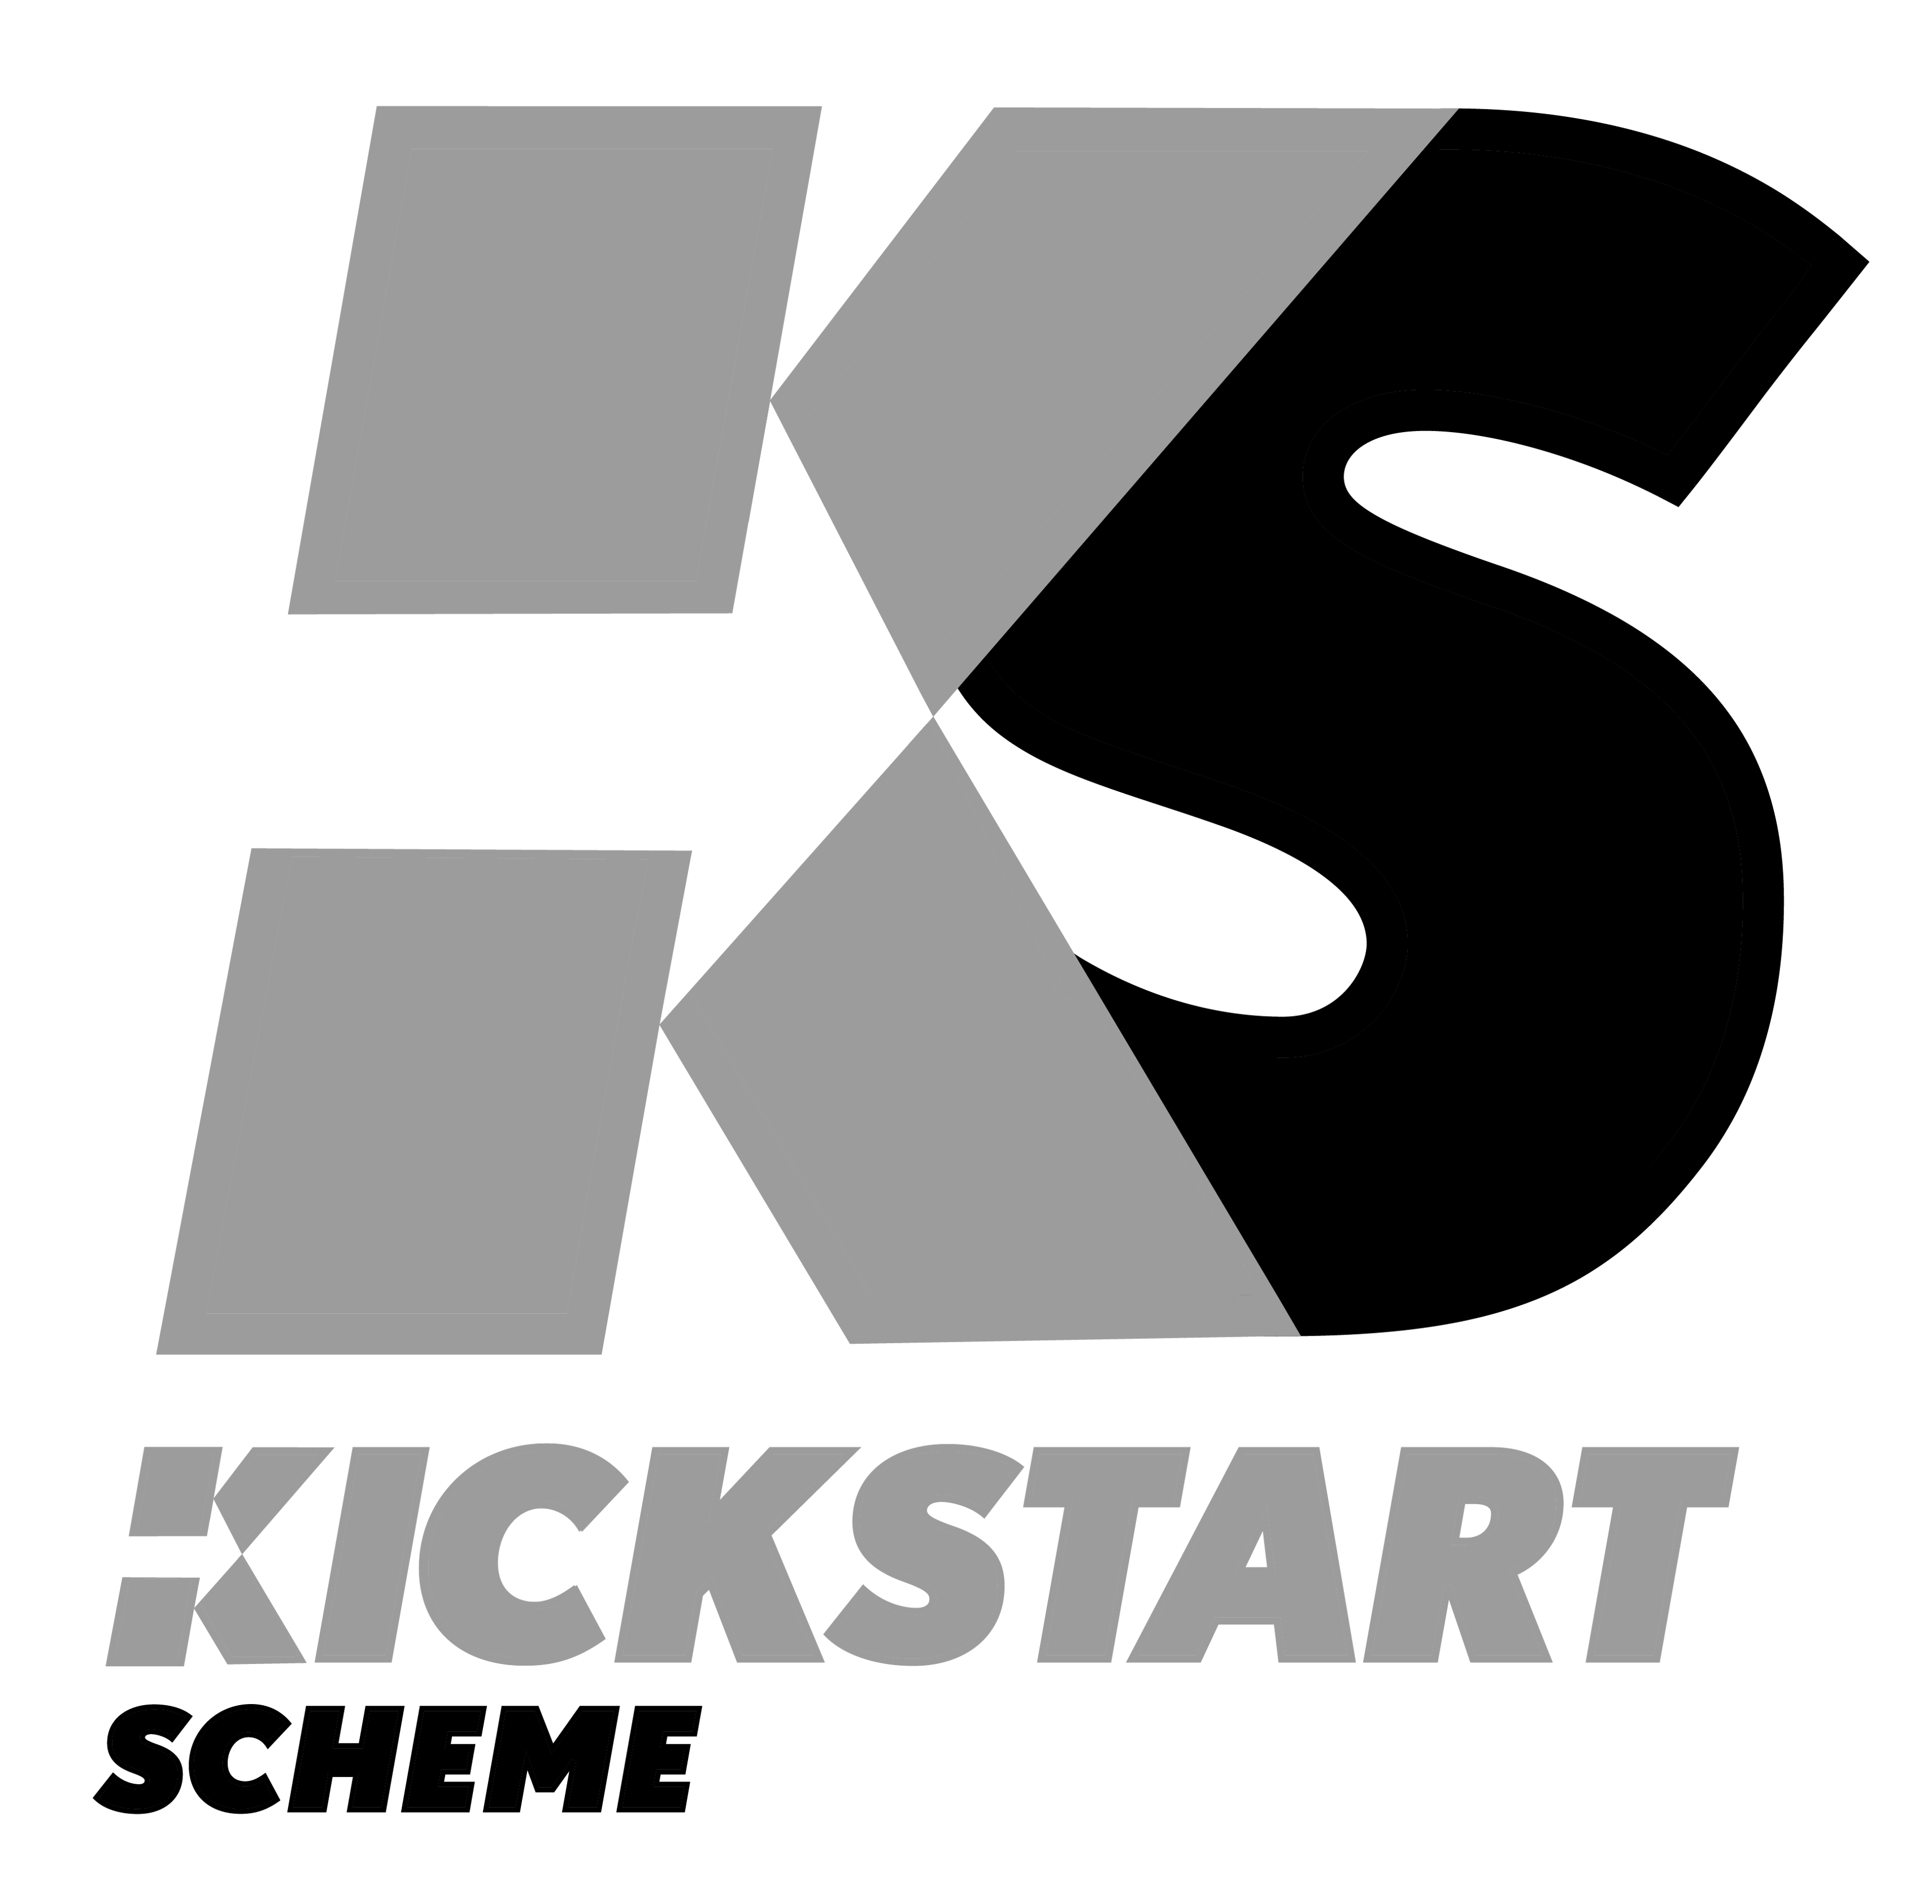 kickstart-scheme-condensed-logo-symbol